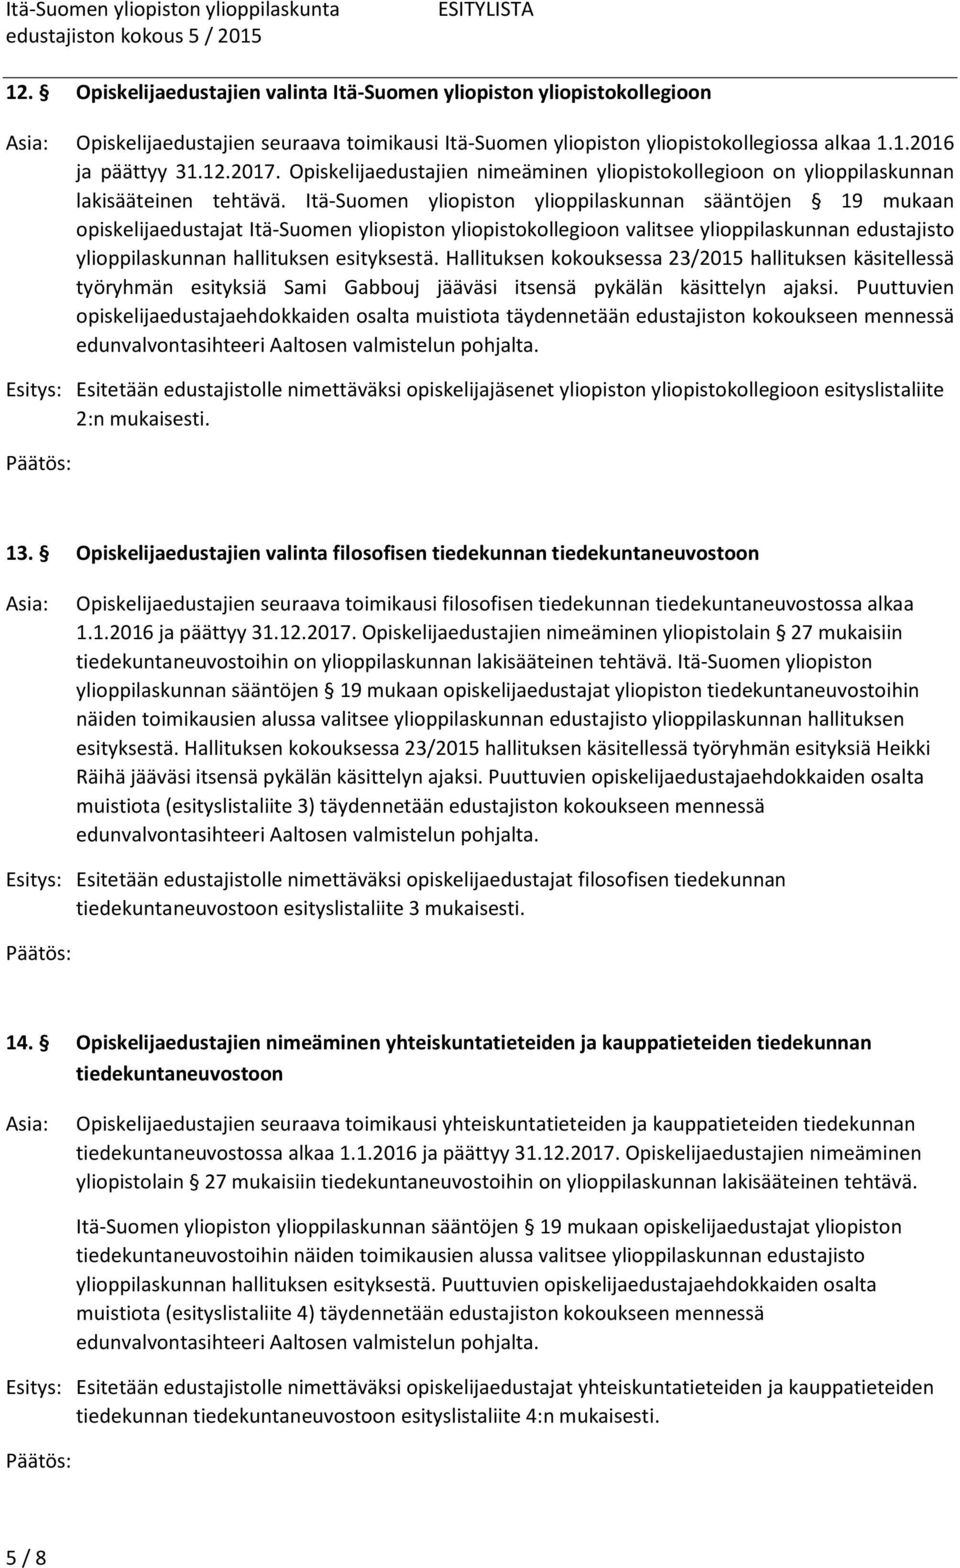 Itä-Suomen yliopiston ylioppilaskunnan sääntöjen 19 mukaan opiskelijaedustajat Itä-Suomen yliopiston yliopistokollegioon valitsee ylioppilaskunnan edustajisto ylioppilaskunnan hallituksen esityksestä.